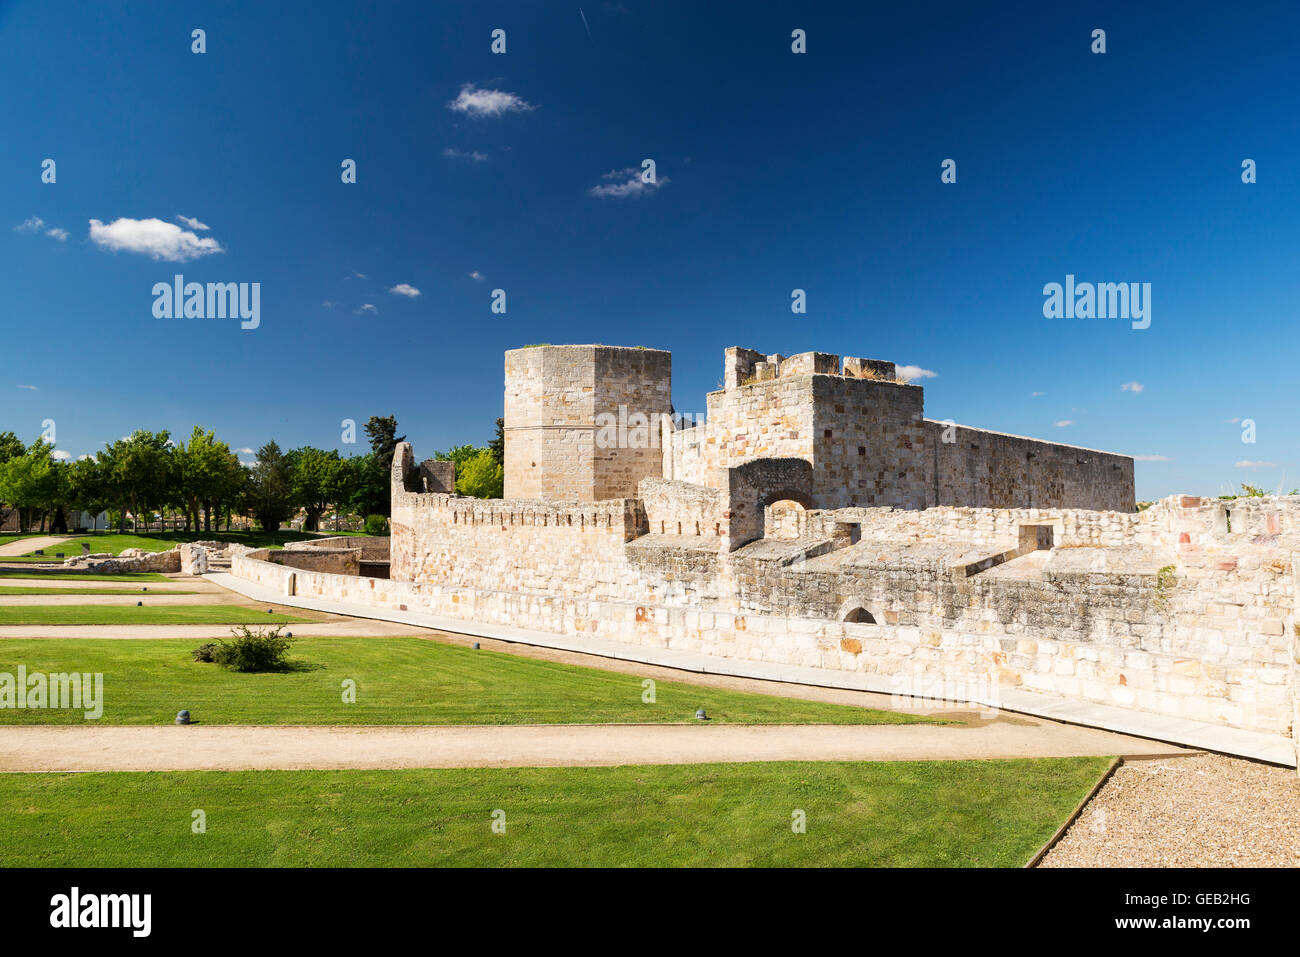 La fortezza medievale di Zamora, Spagna. Filtro polarizzatore Foto Stock